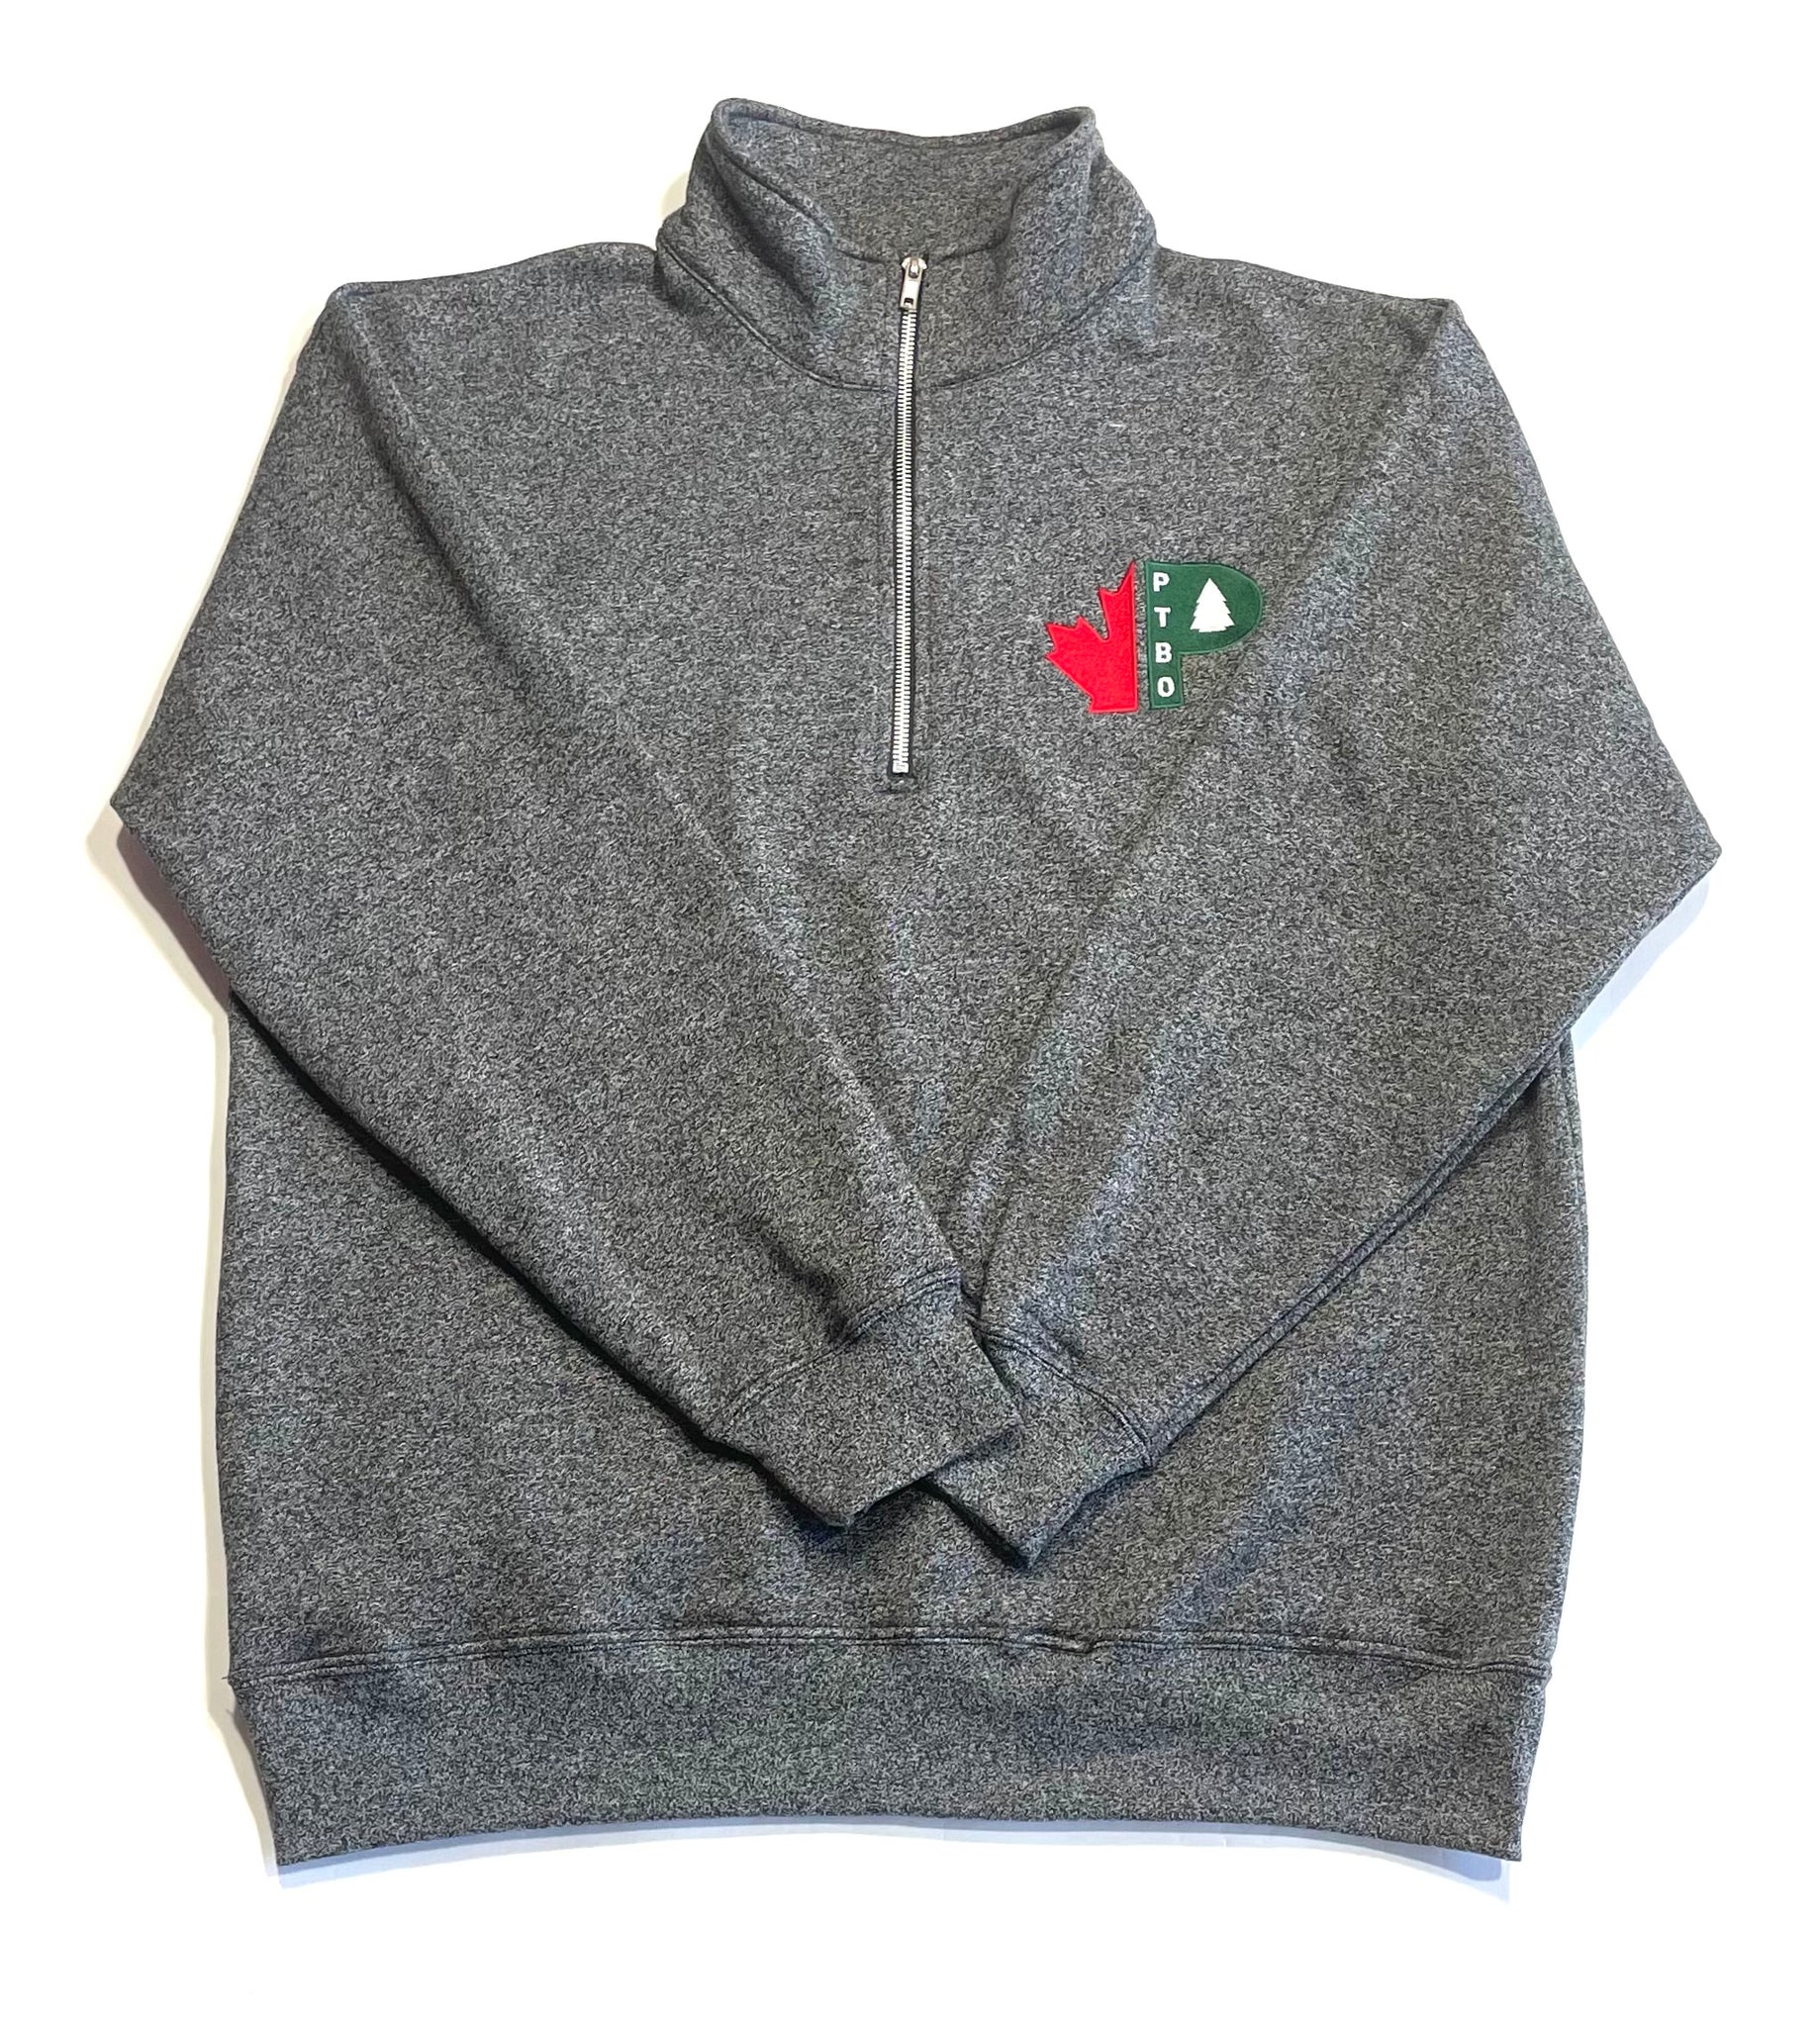 PTBO - 1/4 Zip Fleece Sweater